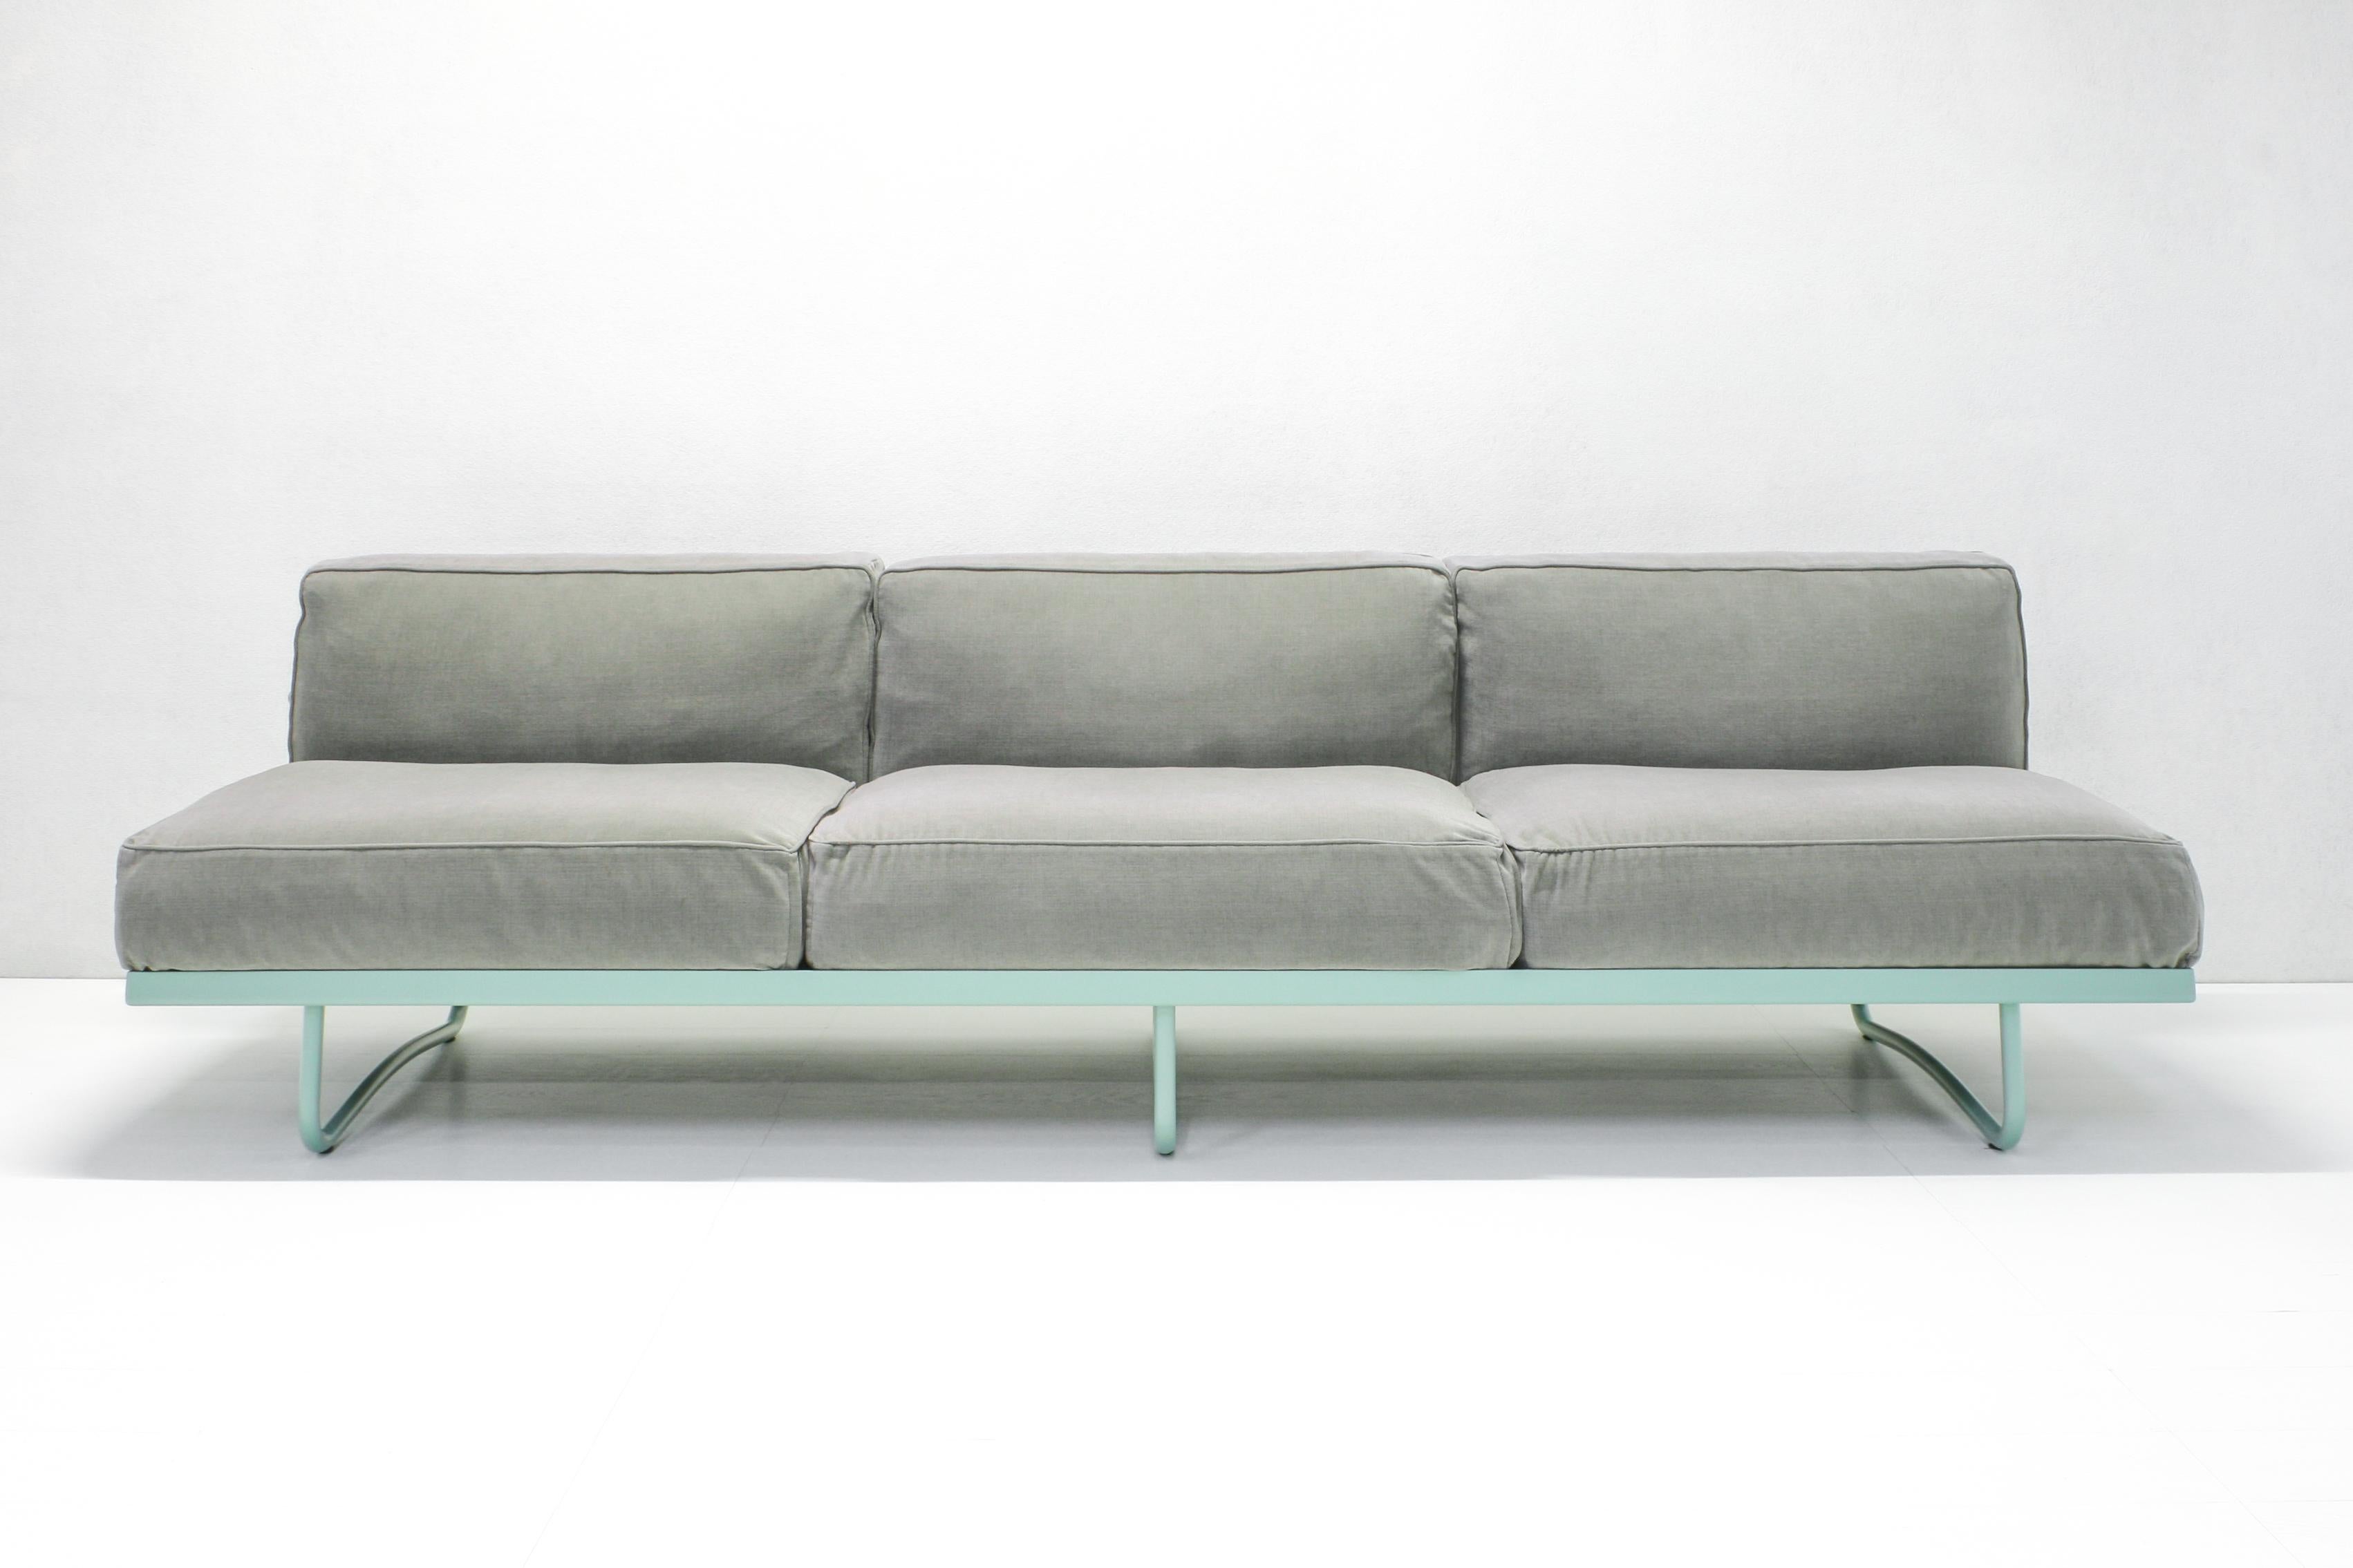 Das 1934 entworfene Sofa LC5 ist Le Corbusiers Interpretation des armlosen Sofas. Mit seinem einladenden Design verleiht LC5 Lounges, Lobbys und Wartebereichen eine lässige Eleganz. 
Neuauflage durch Cassina im Jahr 2014 in verschiedenen